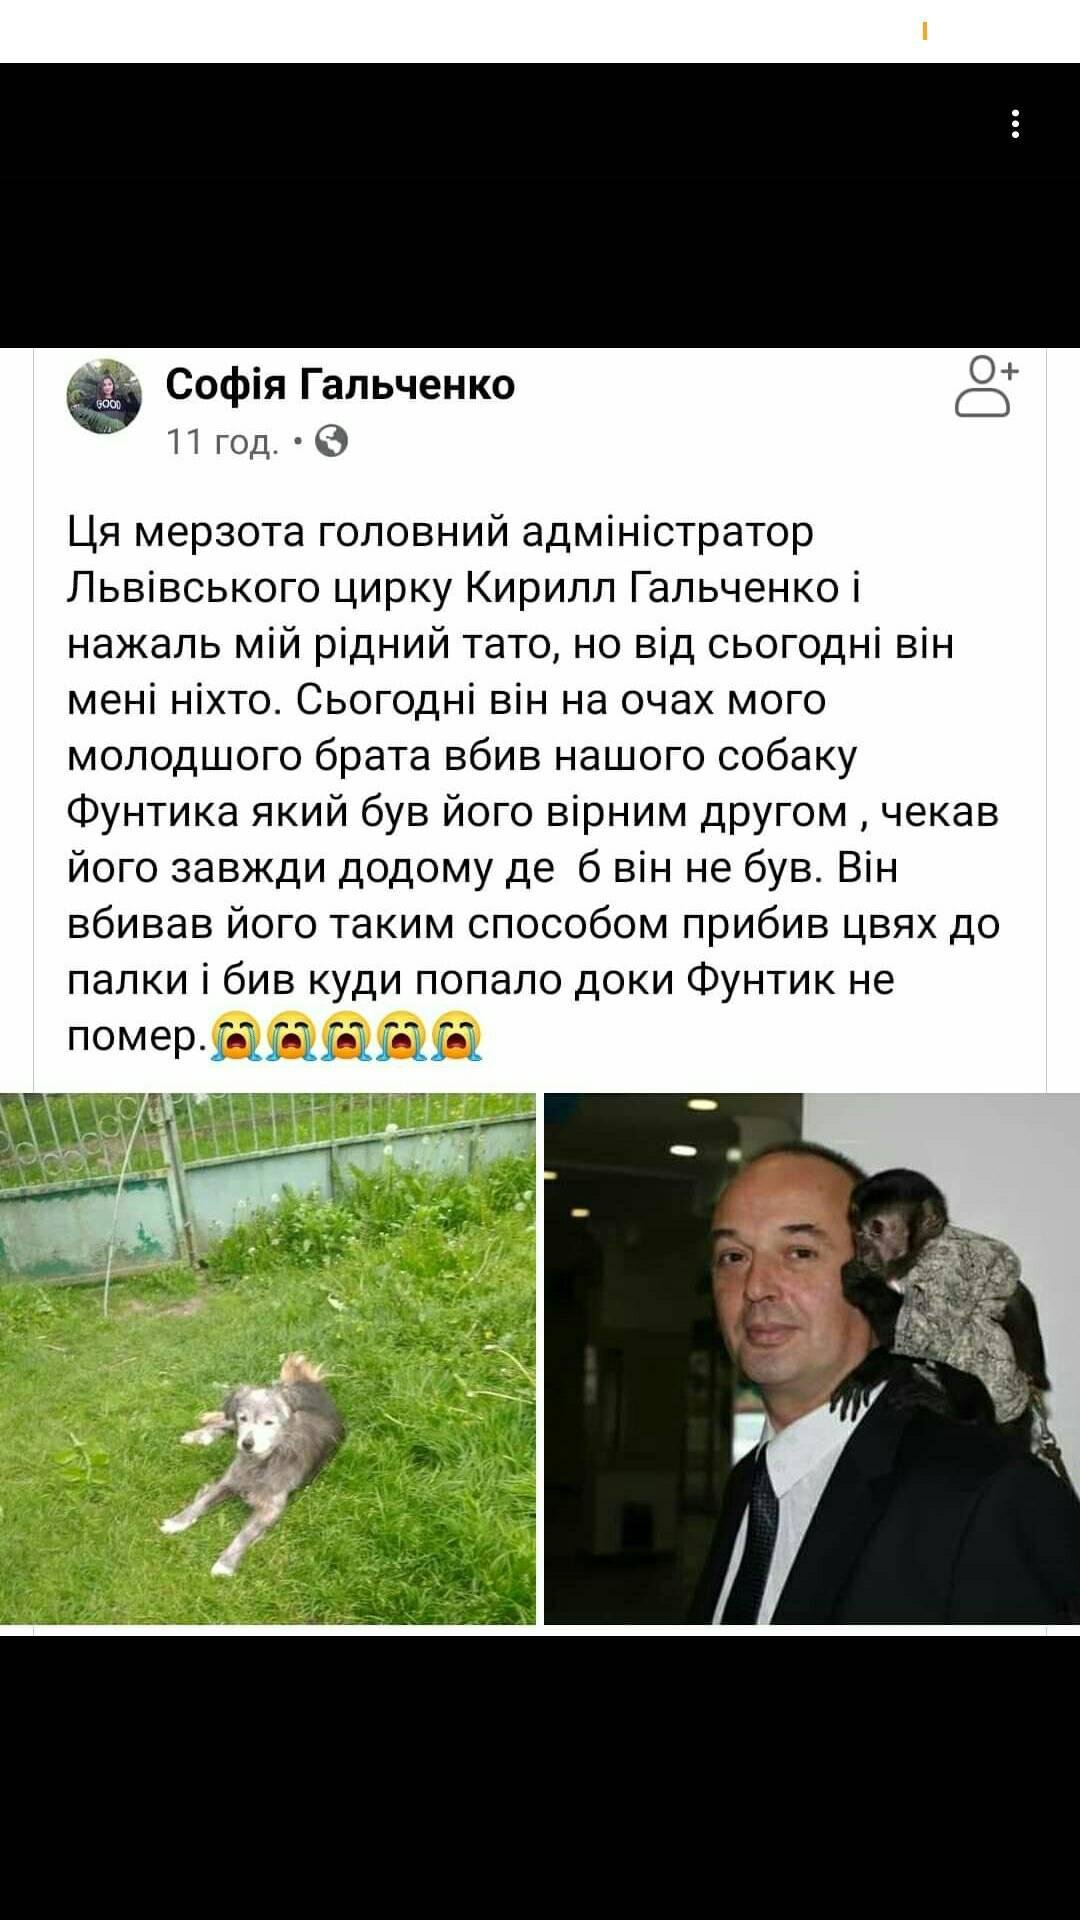 Пост Софії Гальченко, скріншот із фейсбуку